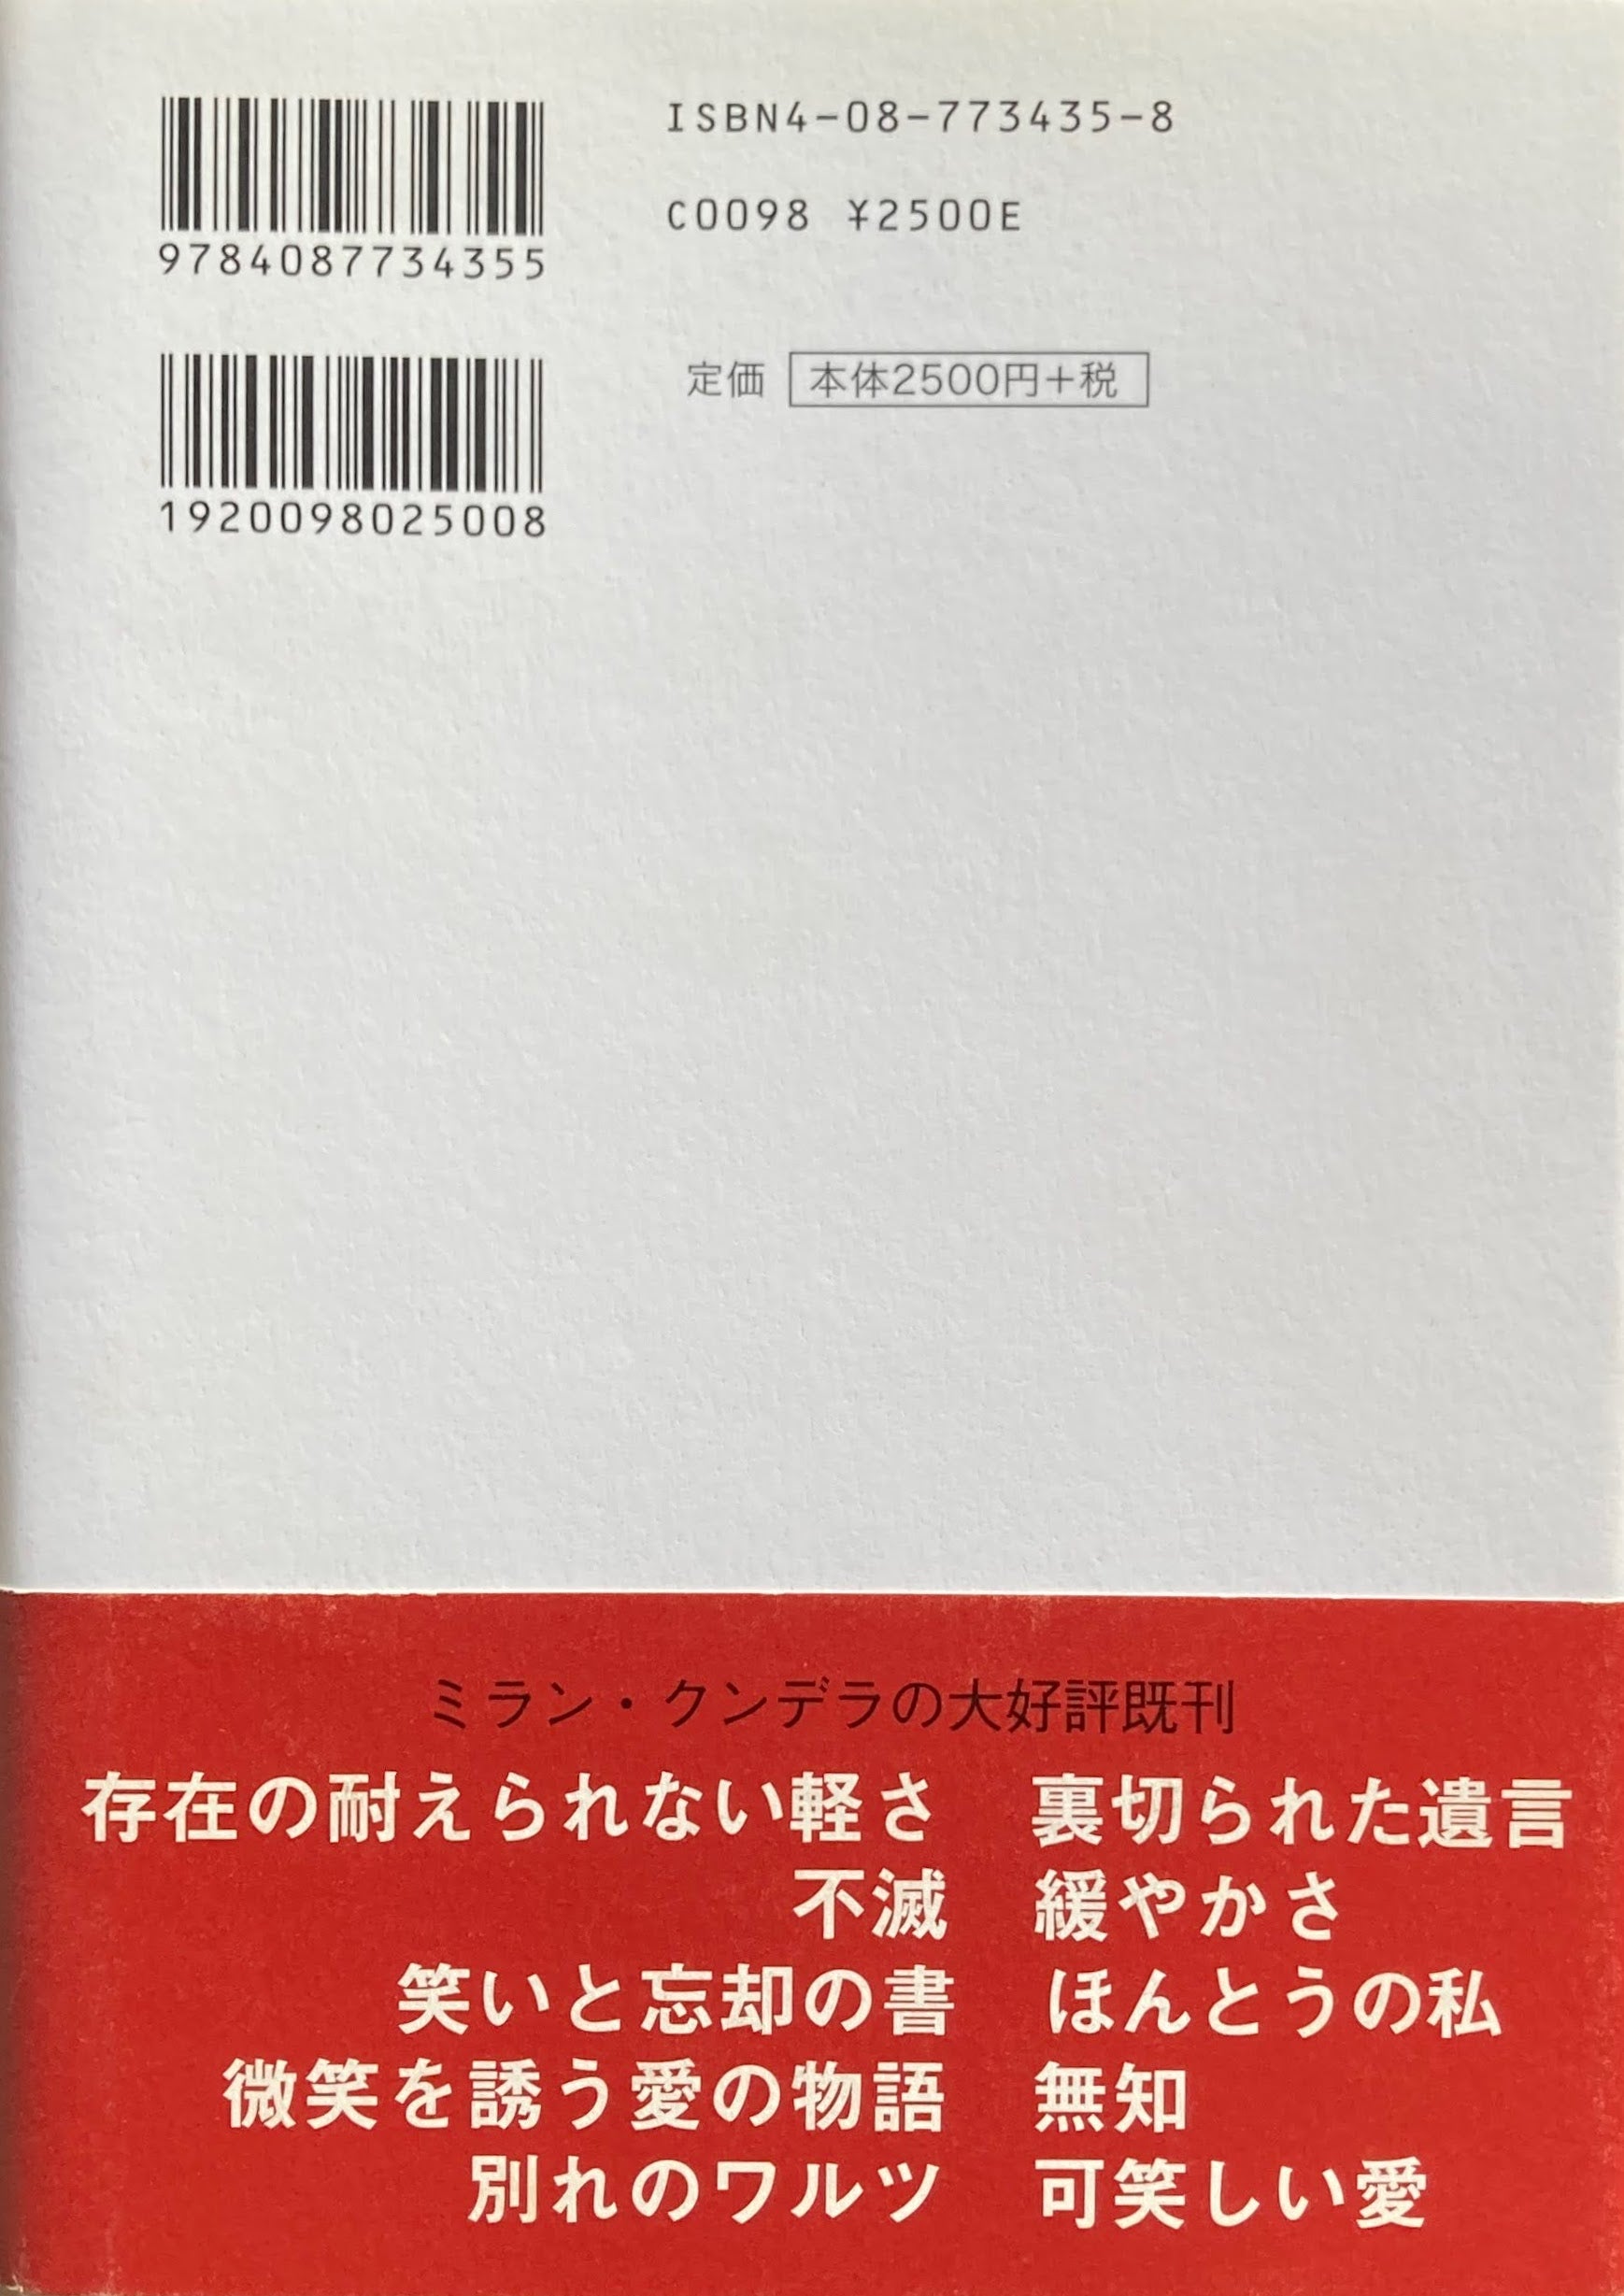 カーテン 7部構成の小説論 ミラン・クンデラ – smokebooks shop